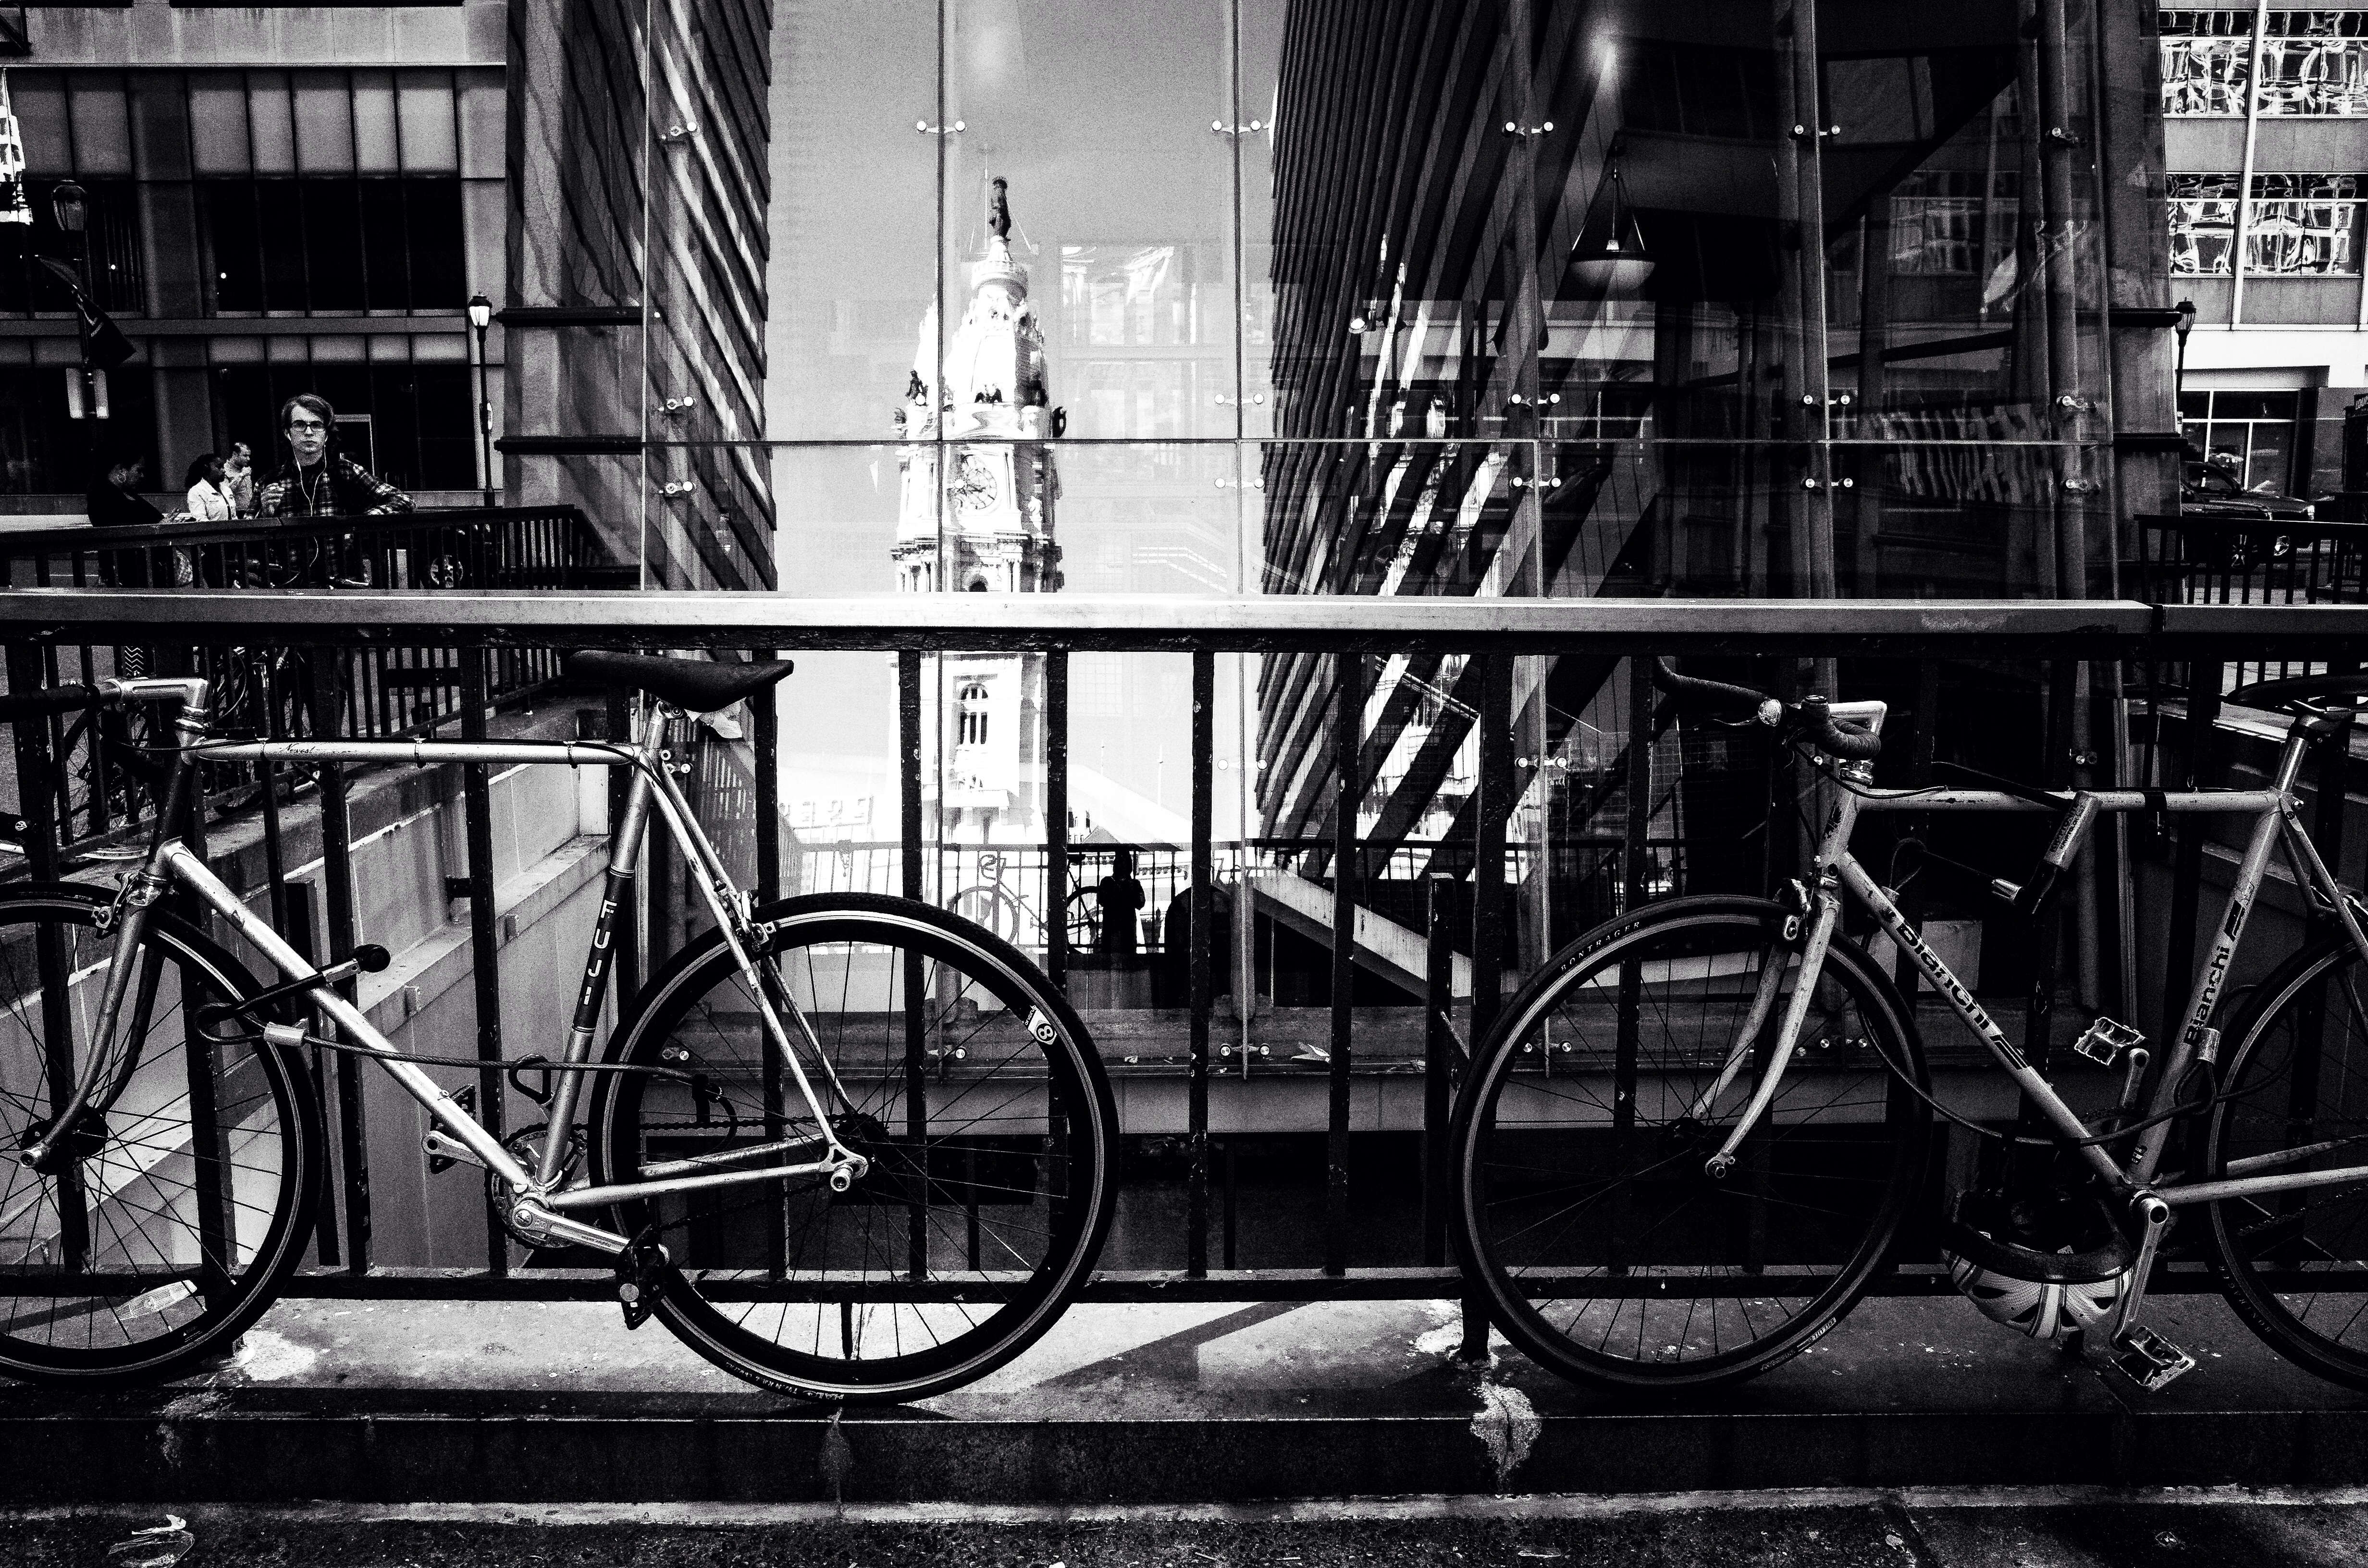 Bike parking, city hall reflections | Al BeFranke, EOTS Flickr Group